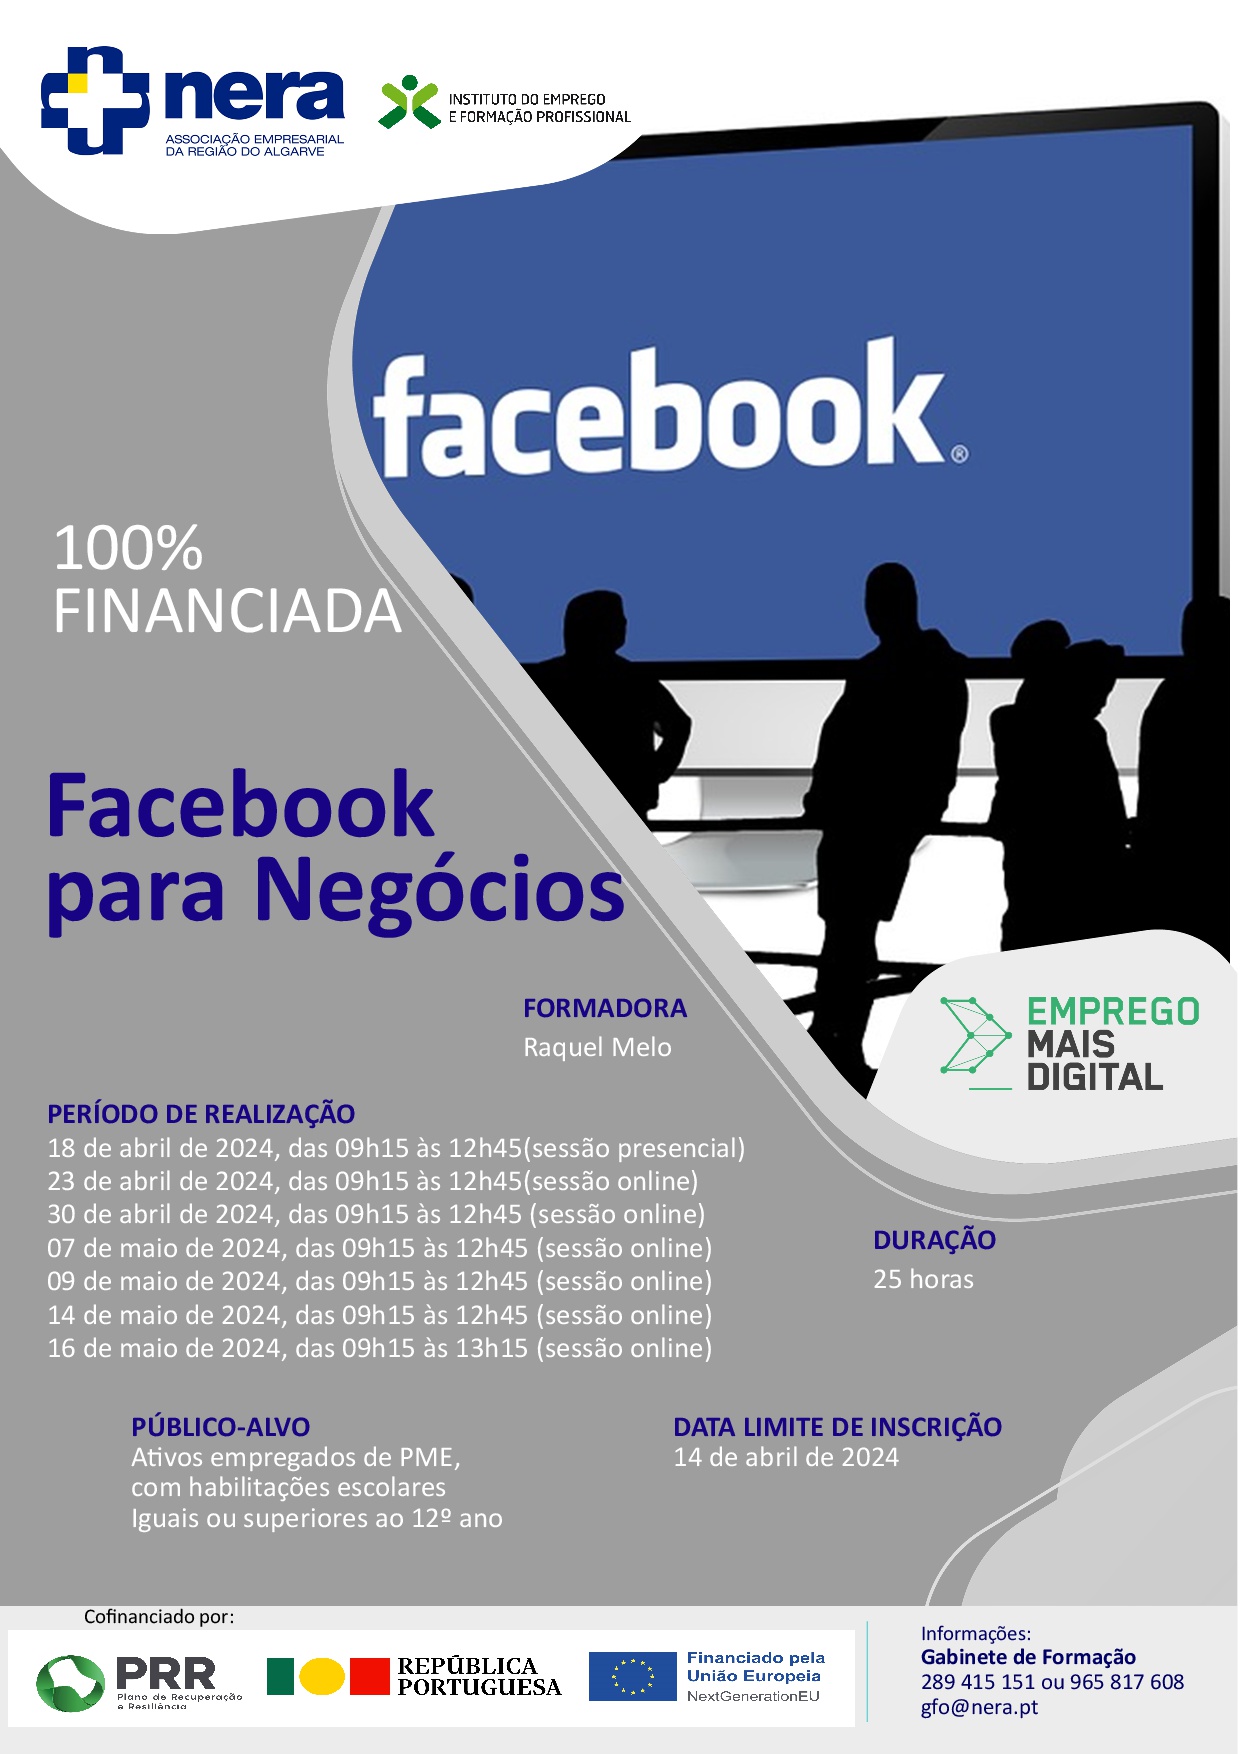 Facebook para Negócios